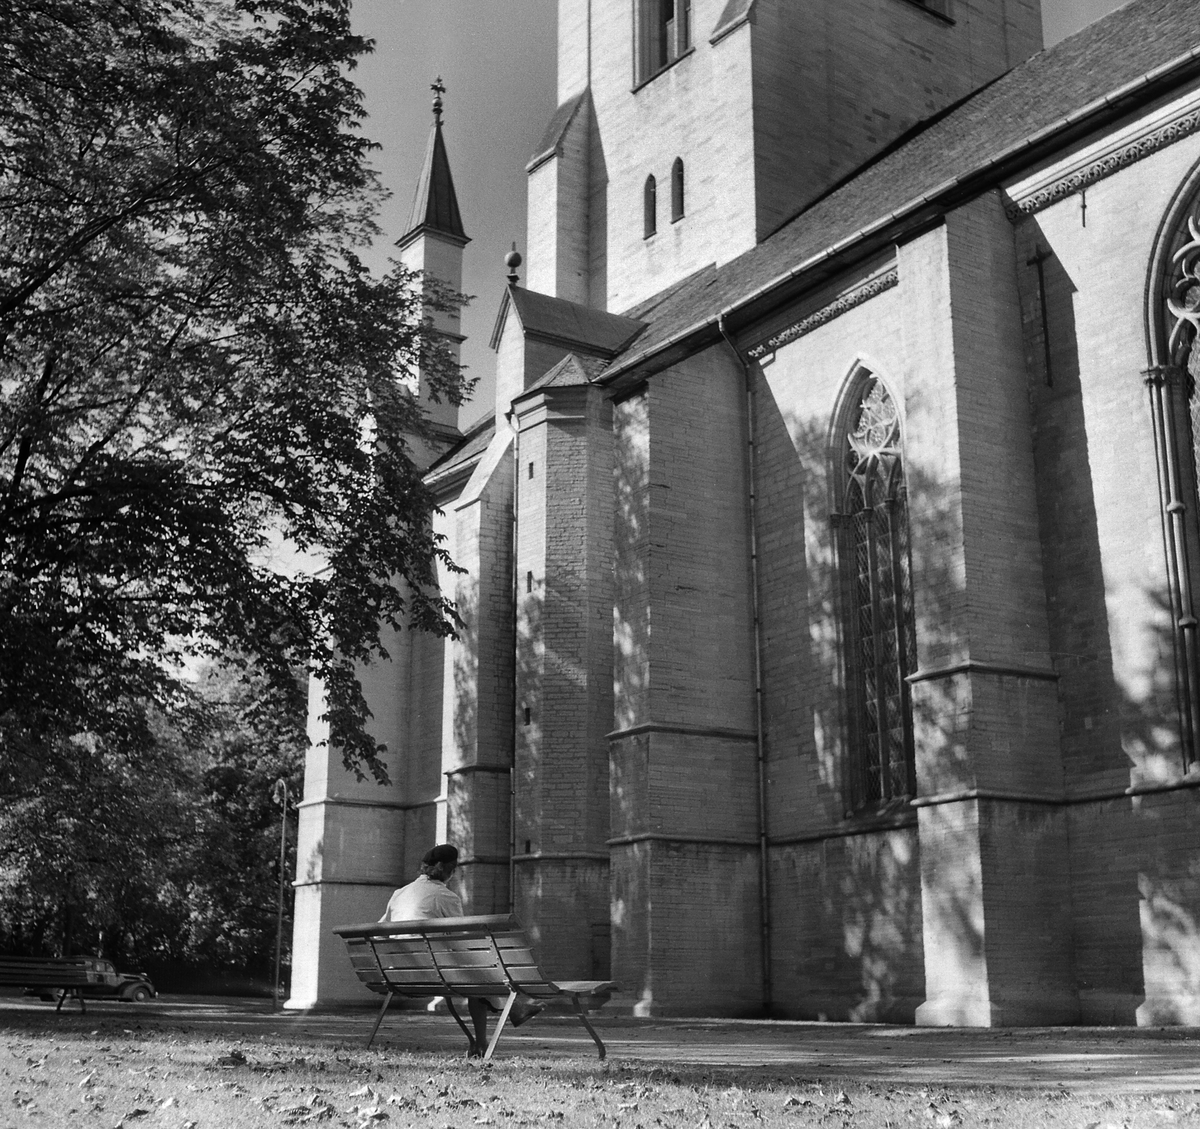 Vår i Domkyrkoparken, 1956.
Pressfotografier från 1950-1960-talet. Samtliga bilder är tagna i Östergötland, de flesta i Linköping.